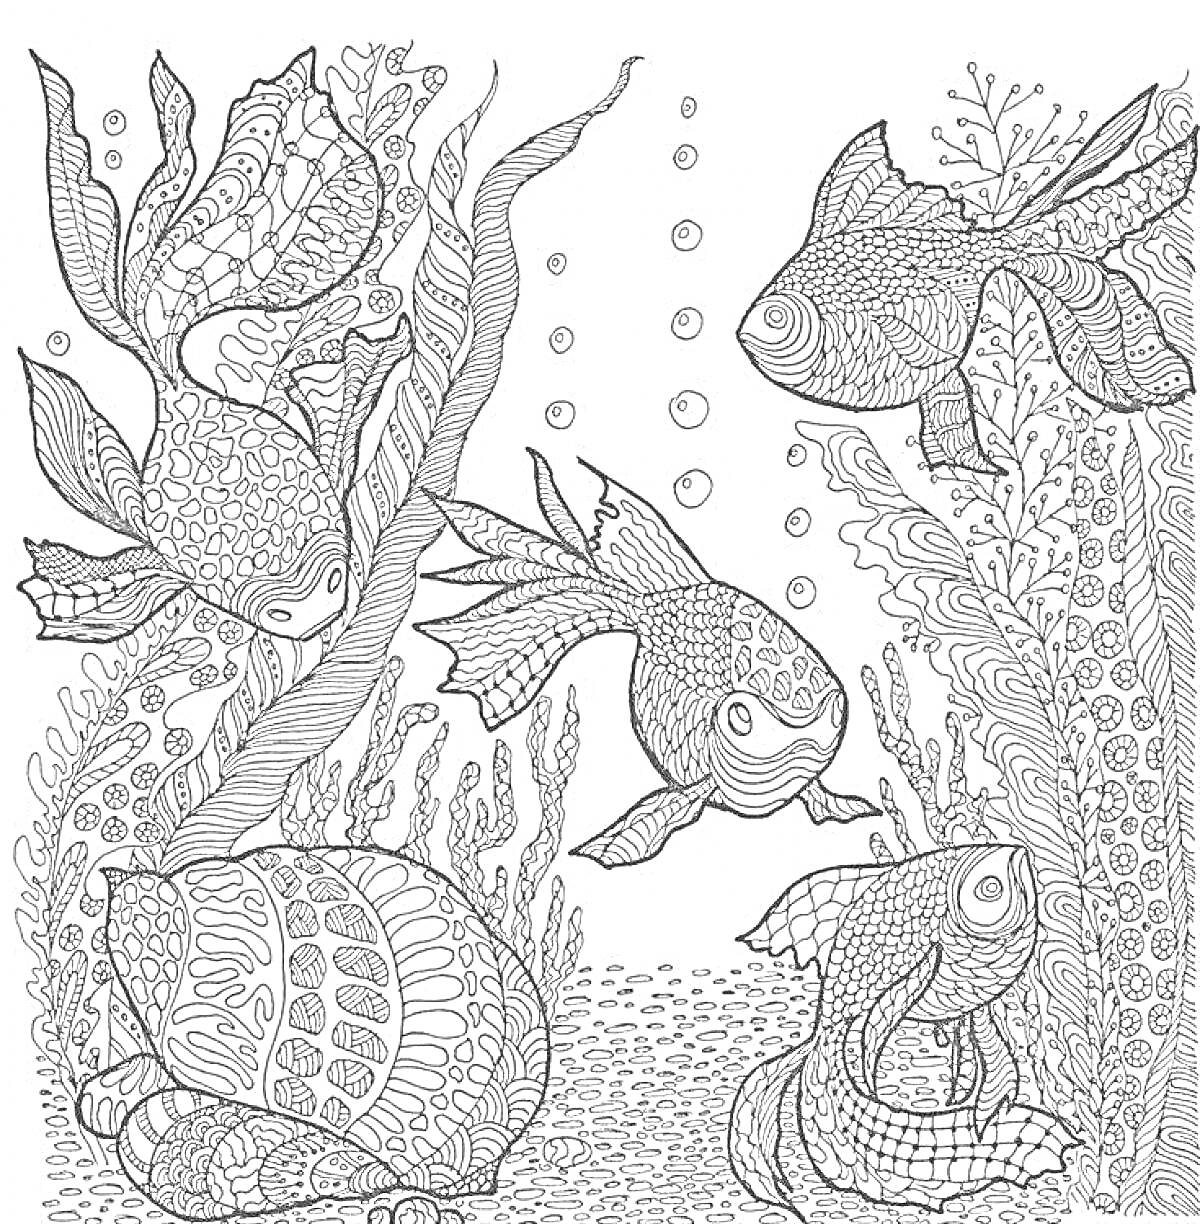 Раскраска Подводный мир с рыбами, ракушками и растительностью